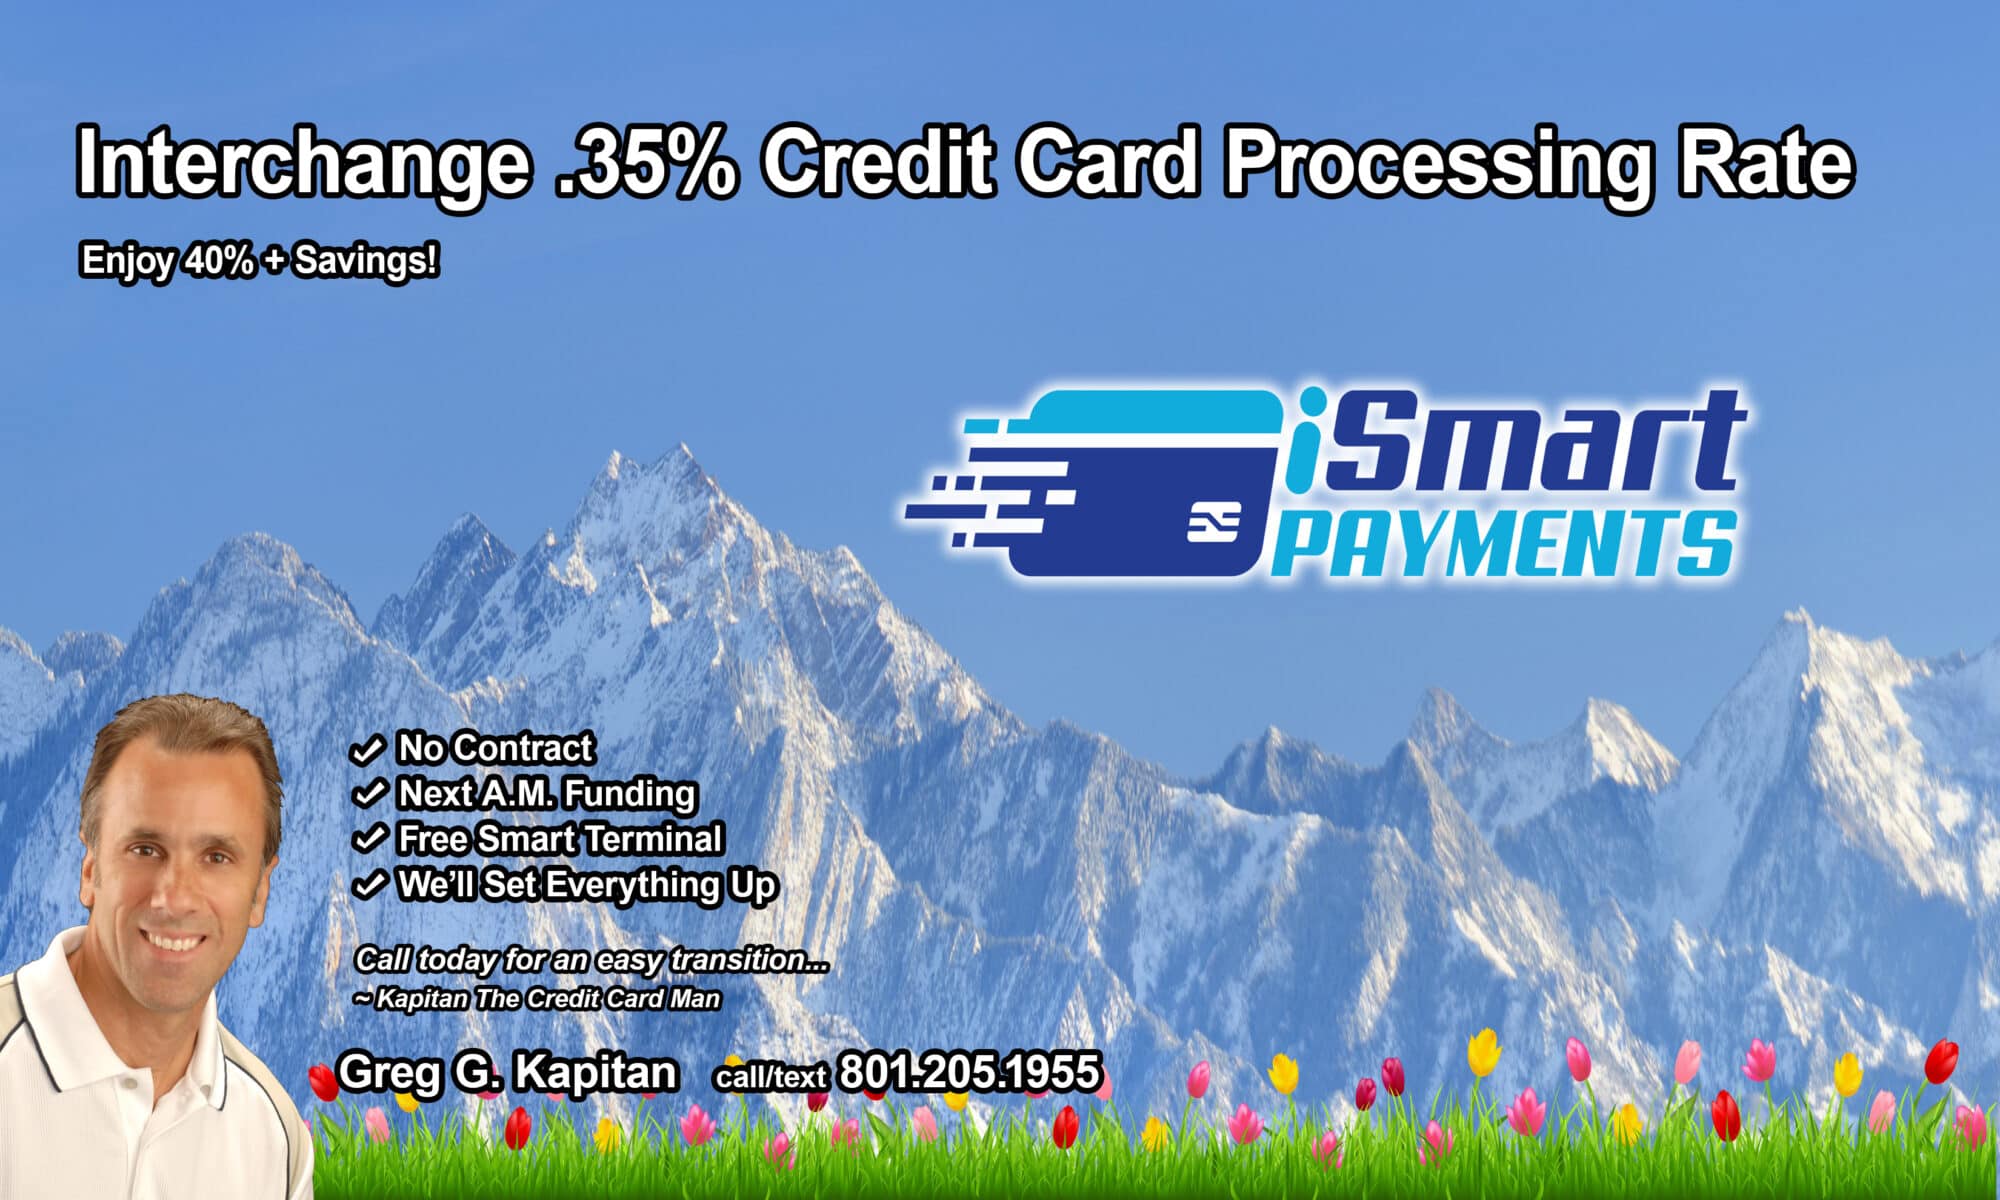 iSmart Payments Interchange Website Banner copy